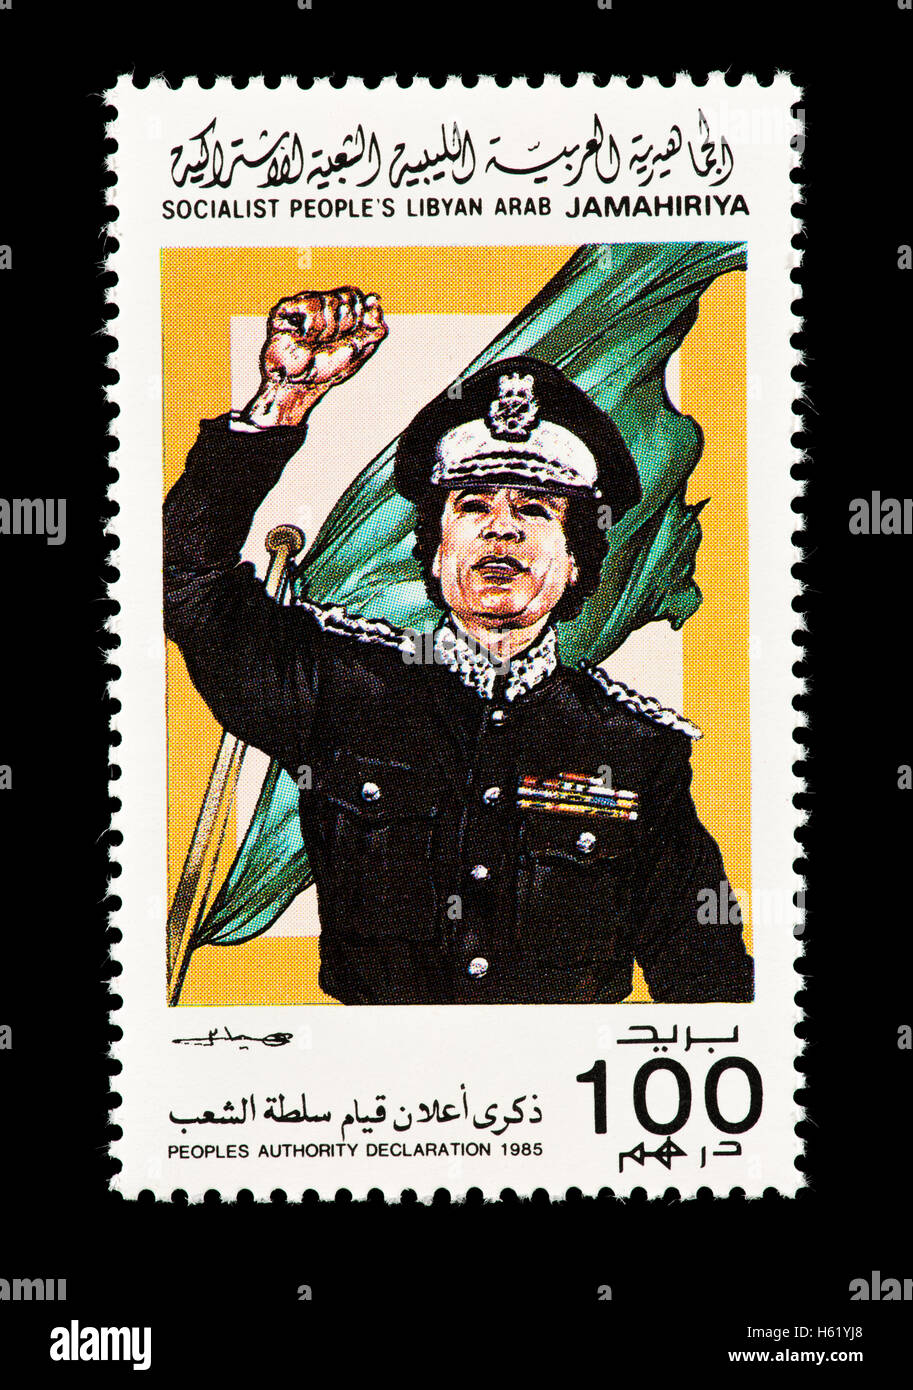 Timbre-poste de représentant de la Libye Khadafi dans un uniforme noir. Banque D'Images